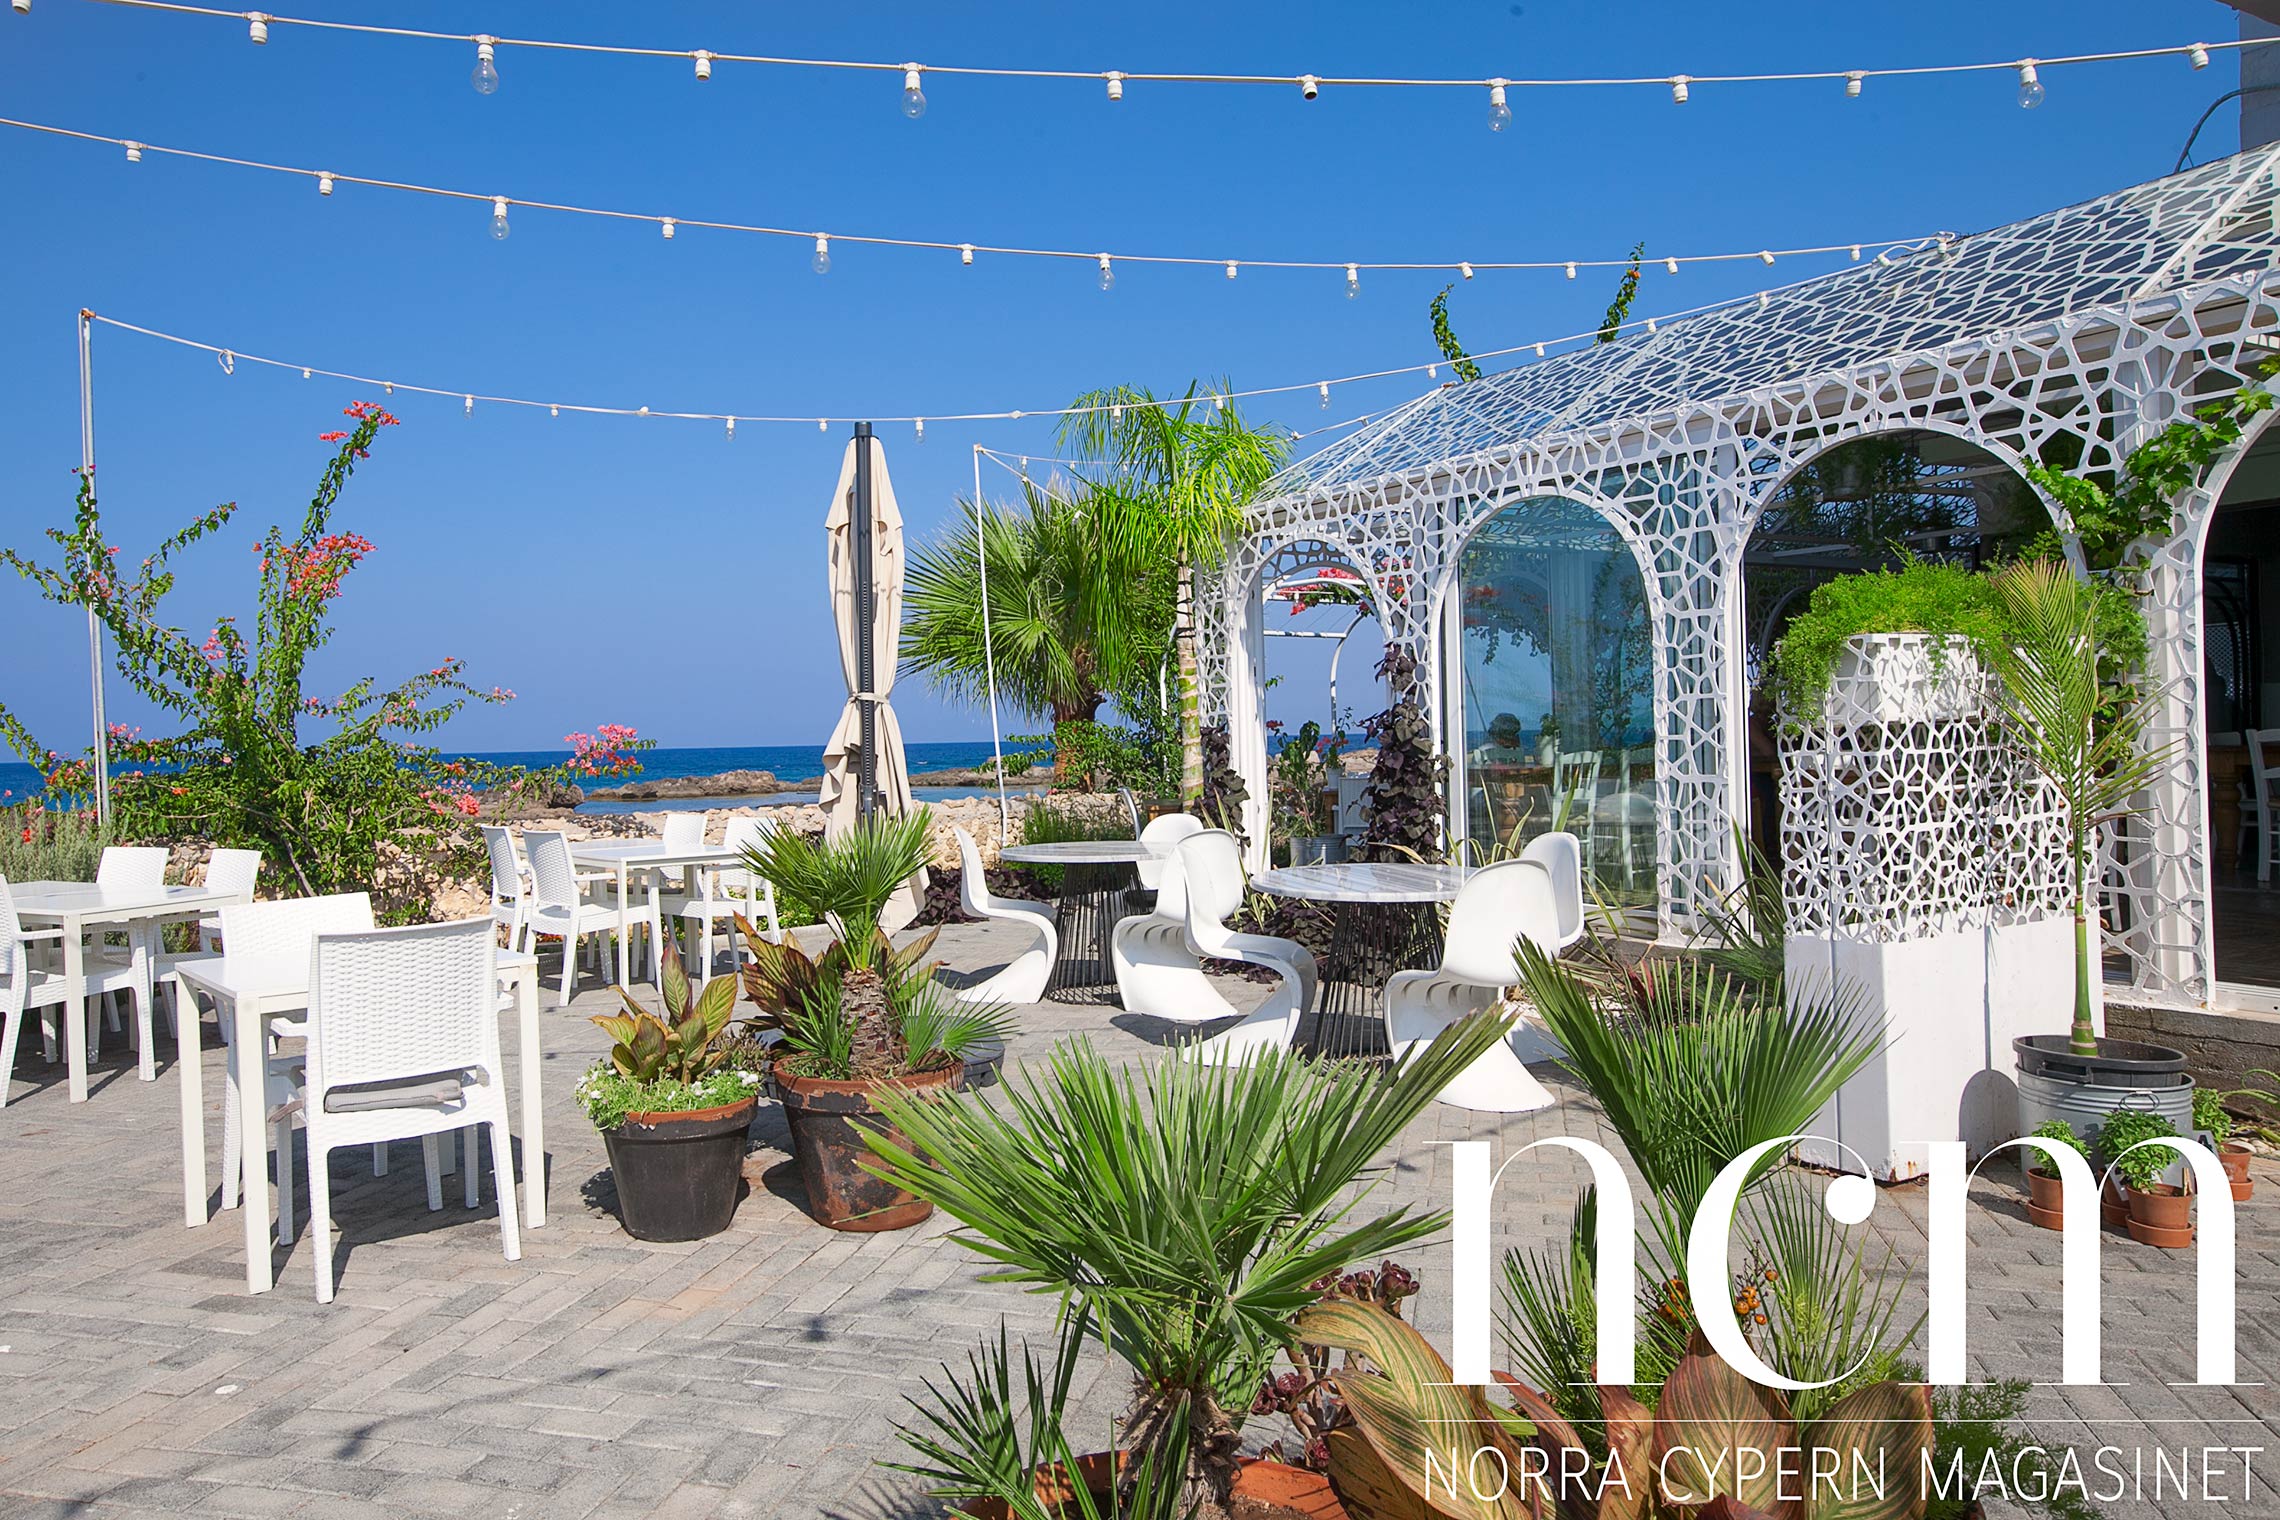 vacker trädgård utanför palm house restaurang på norra cypern